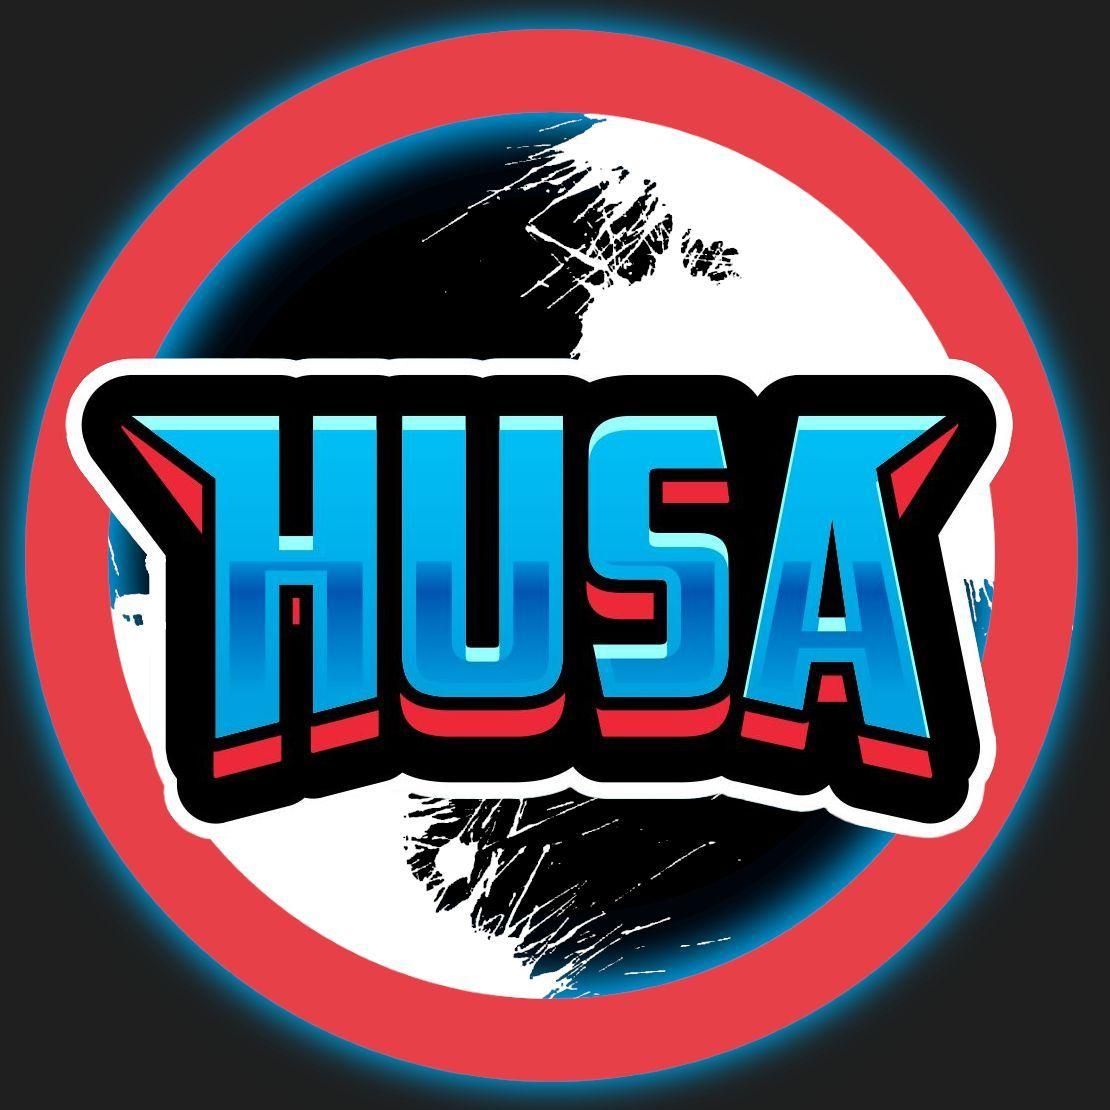 Player husaaa avatar